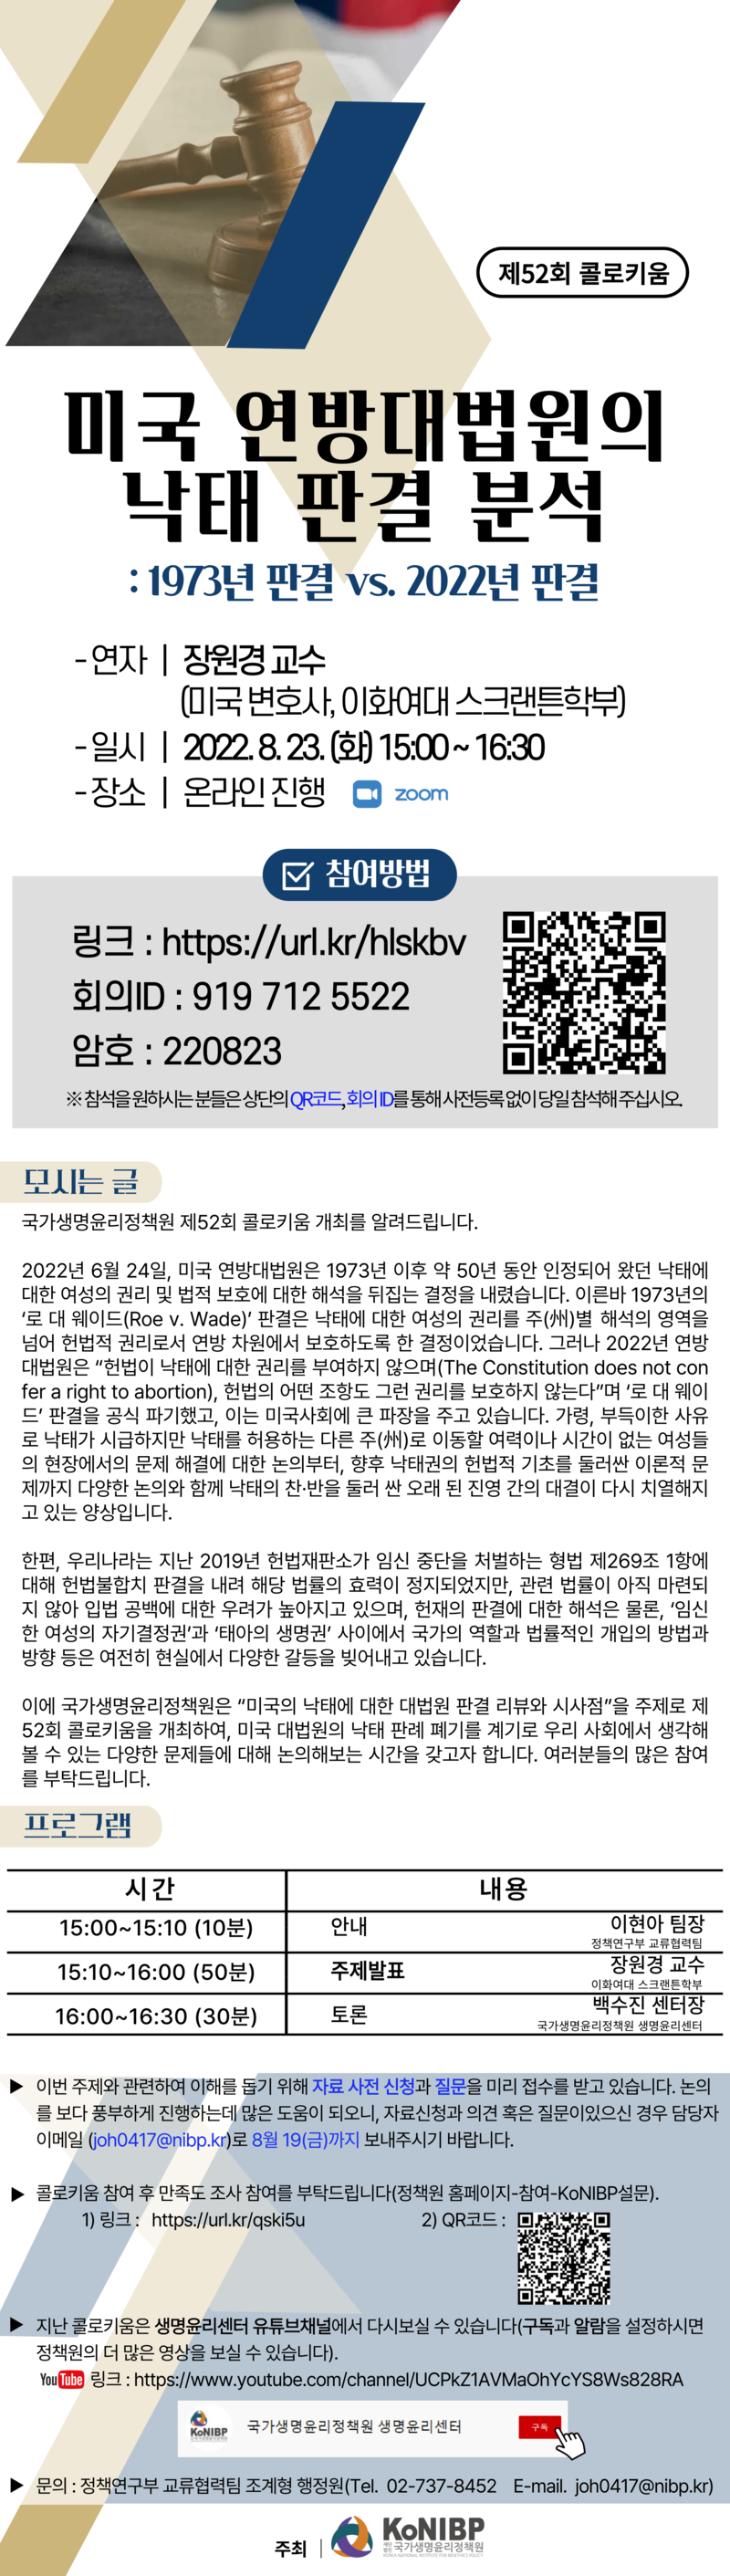 (게시용)제52회 콜로키움 개최 초대장_수정2.png